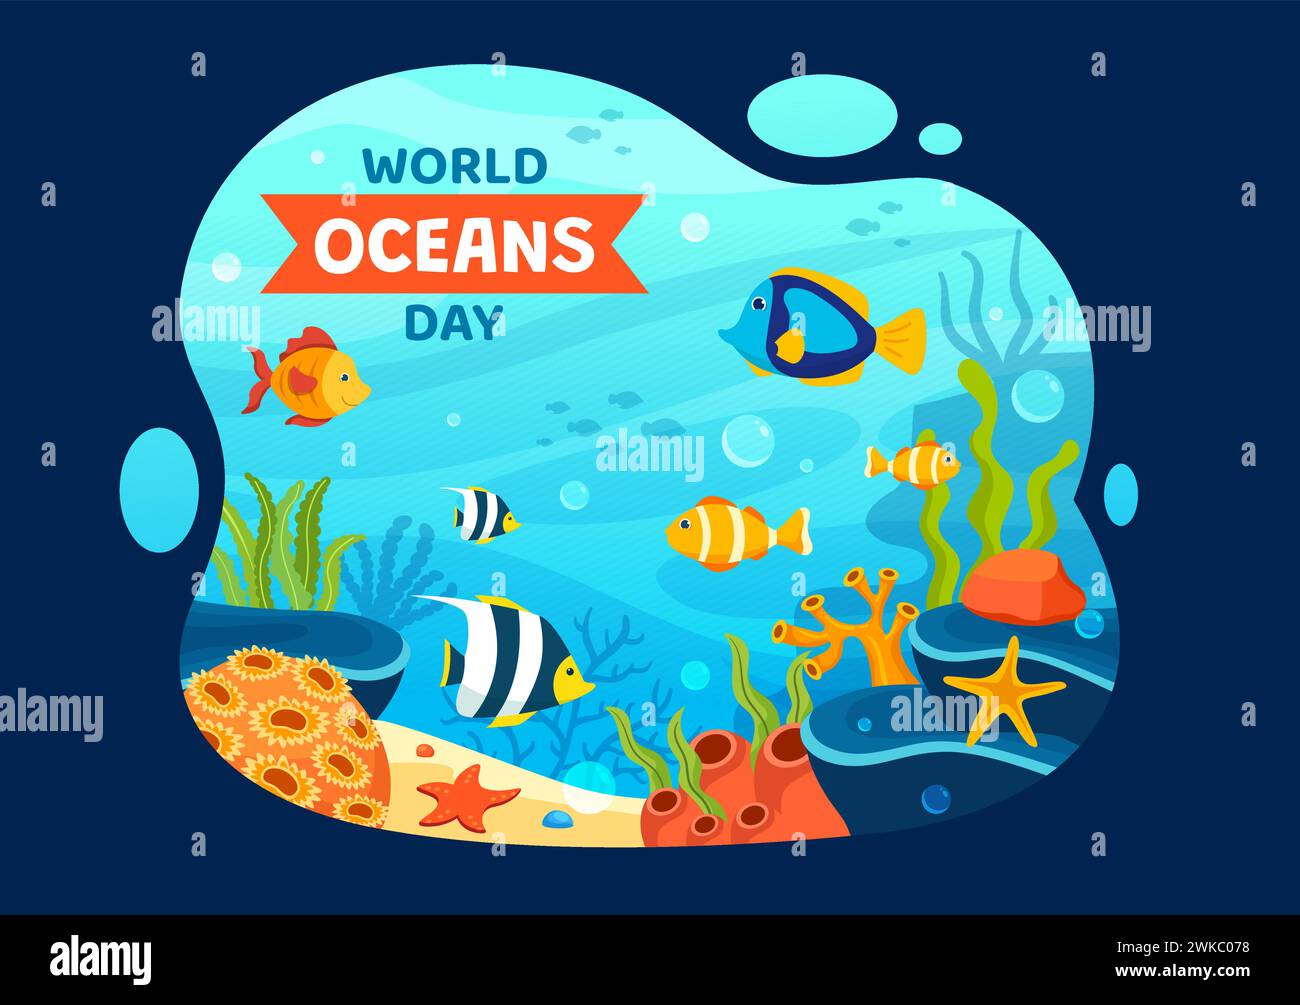 World Oceans Day Vektor Illustration zum Schutz und Erhalt von Ozean, Fisch, Ökosystem oder Meerespflanzen im flachen Cartoon Hintergrund Design Stock Vektor